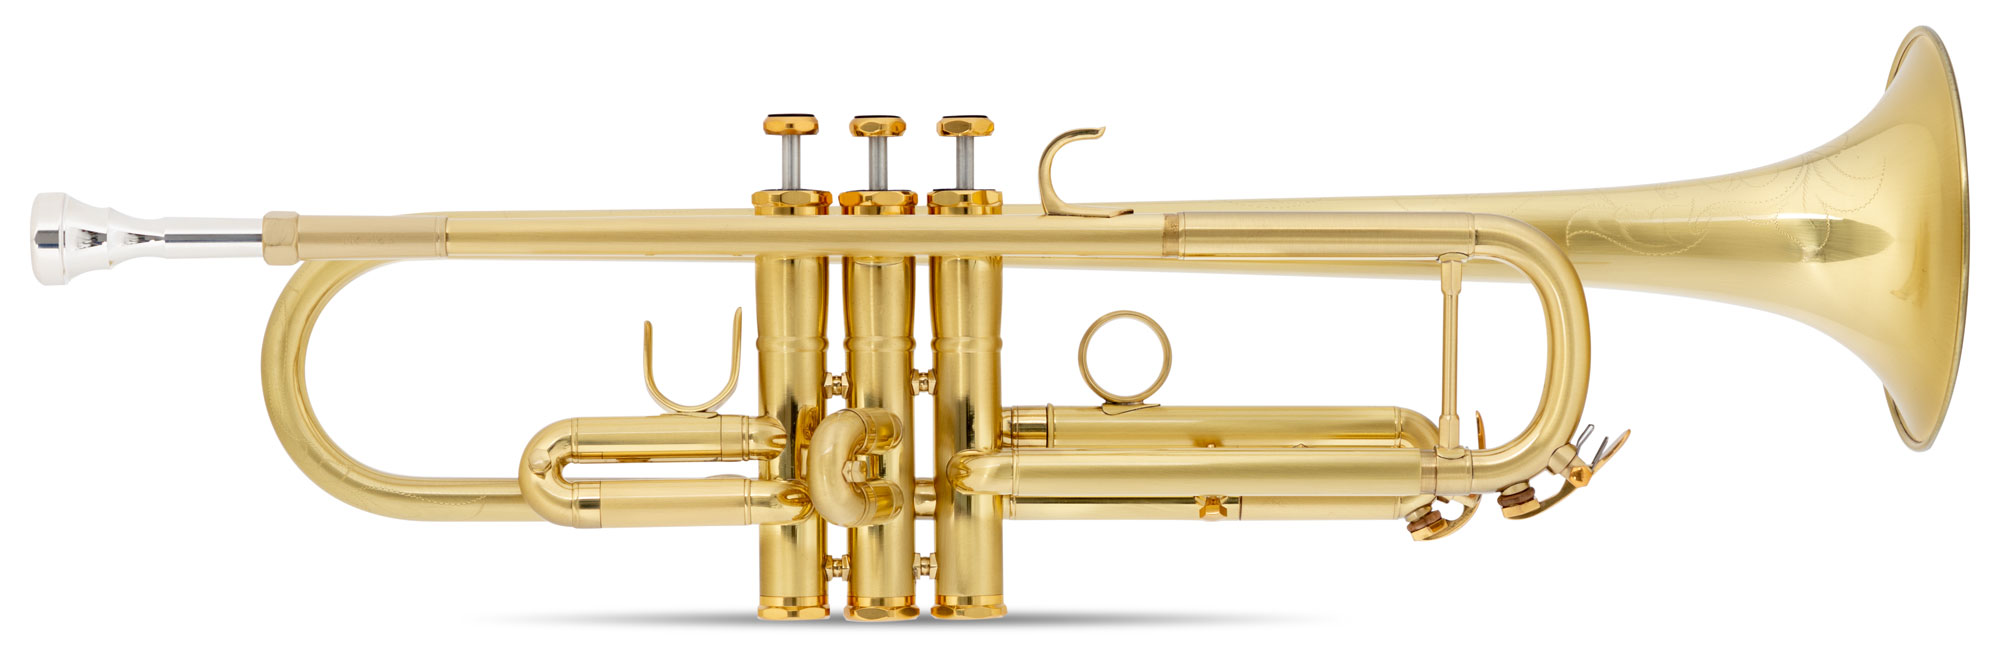 Lechgold TR-16B Bb-Trompete gebürstet Bild 1